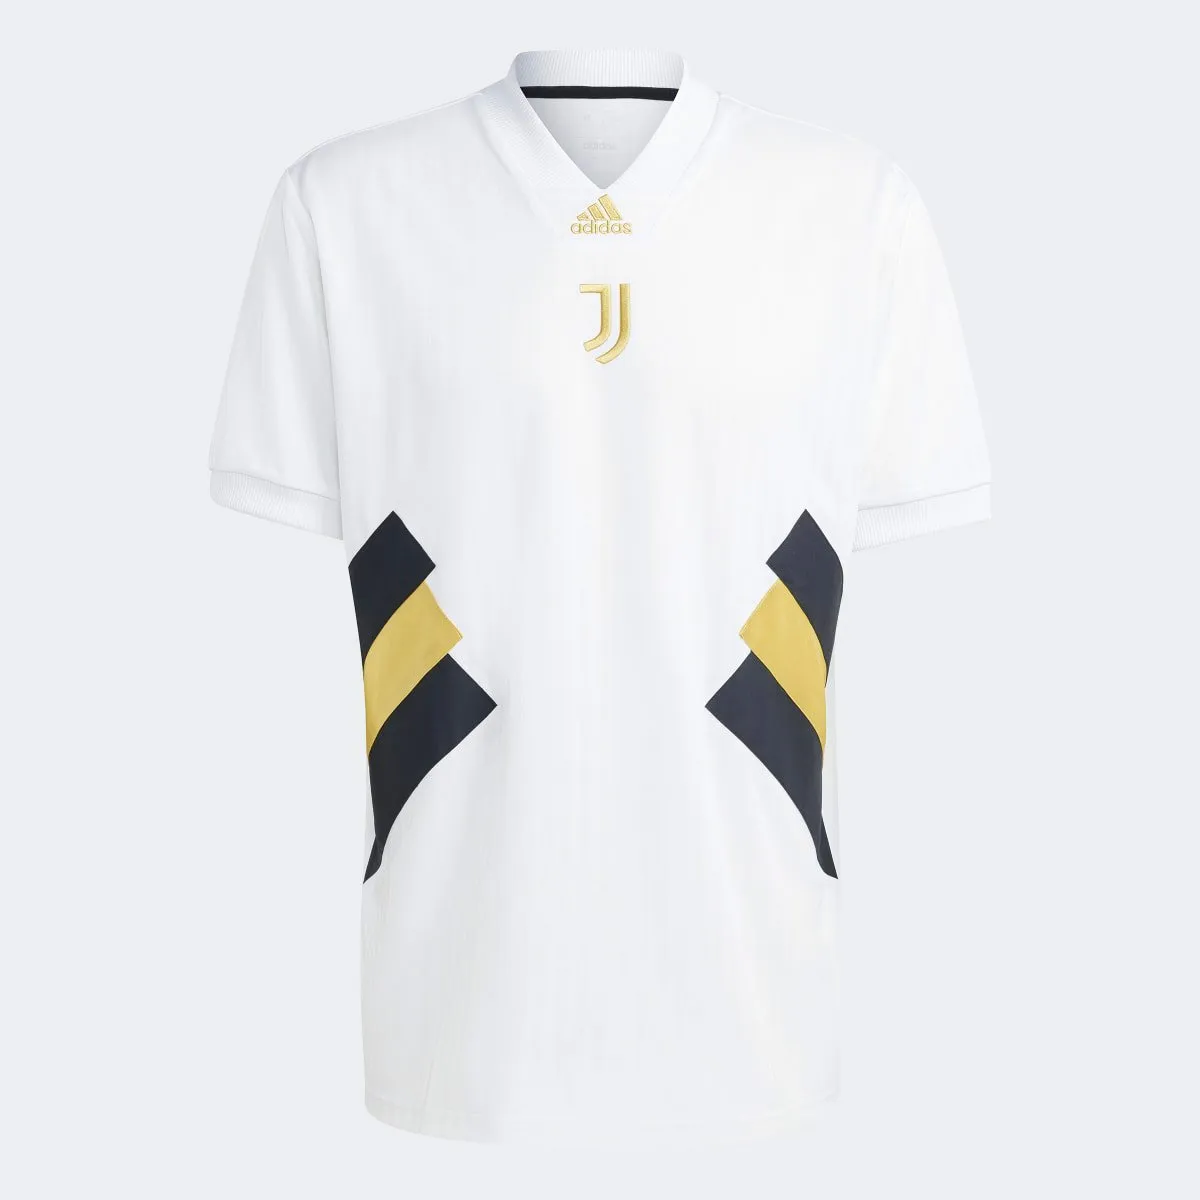 Camisa Juventus 23/24 Icon S/N Adidas Masculina (Tam P, M E Gg)